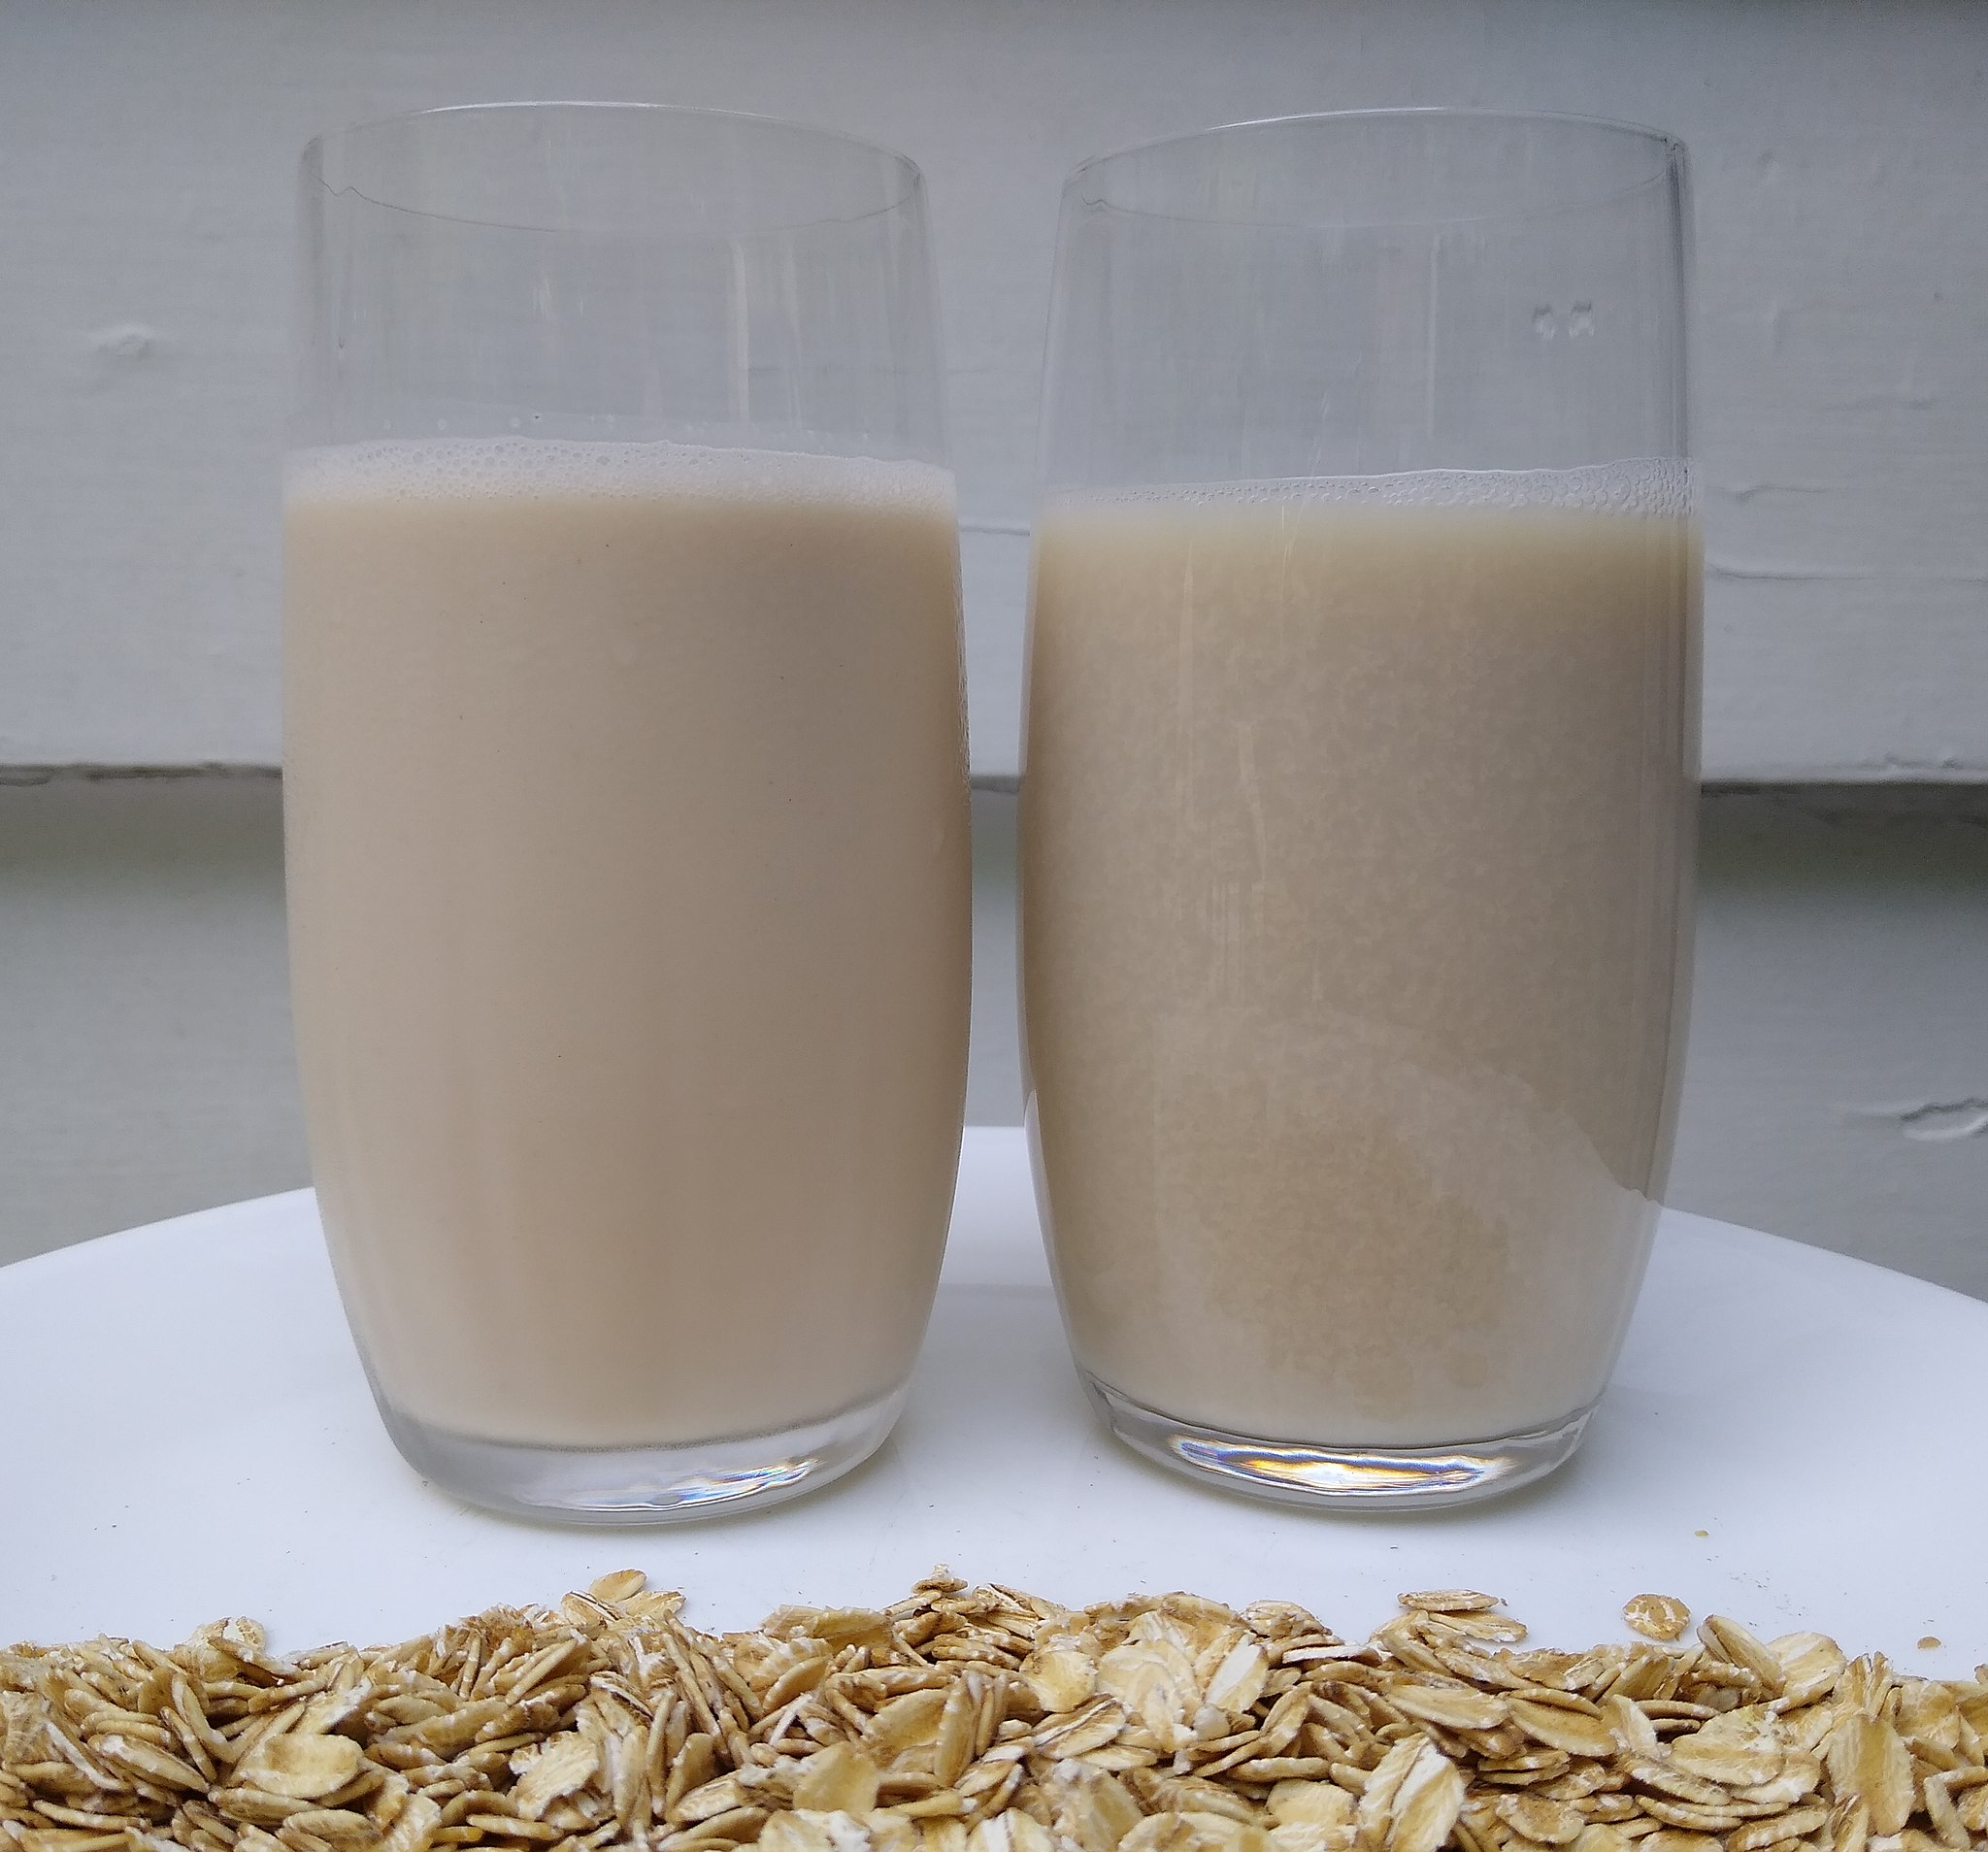 oat-milk-wikimedia-commons